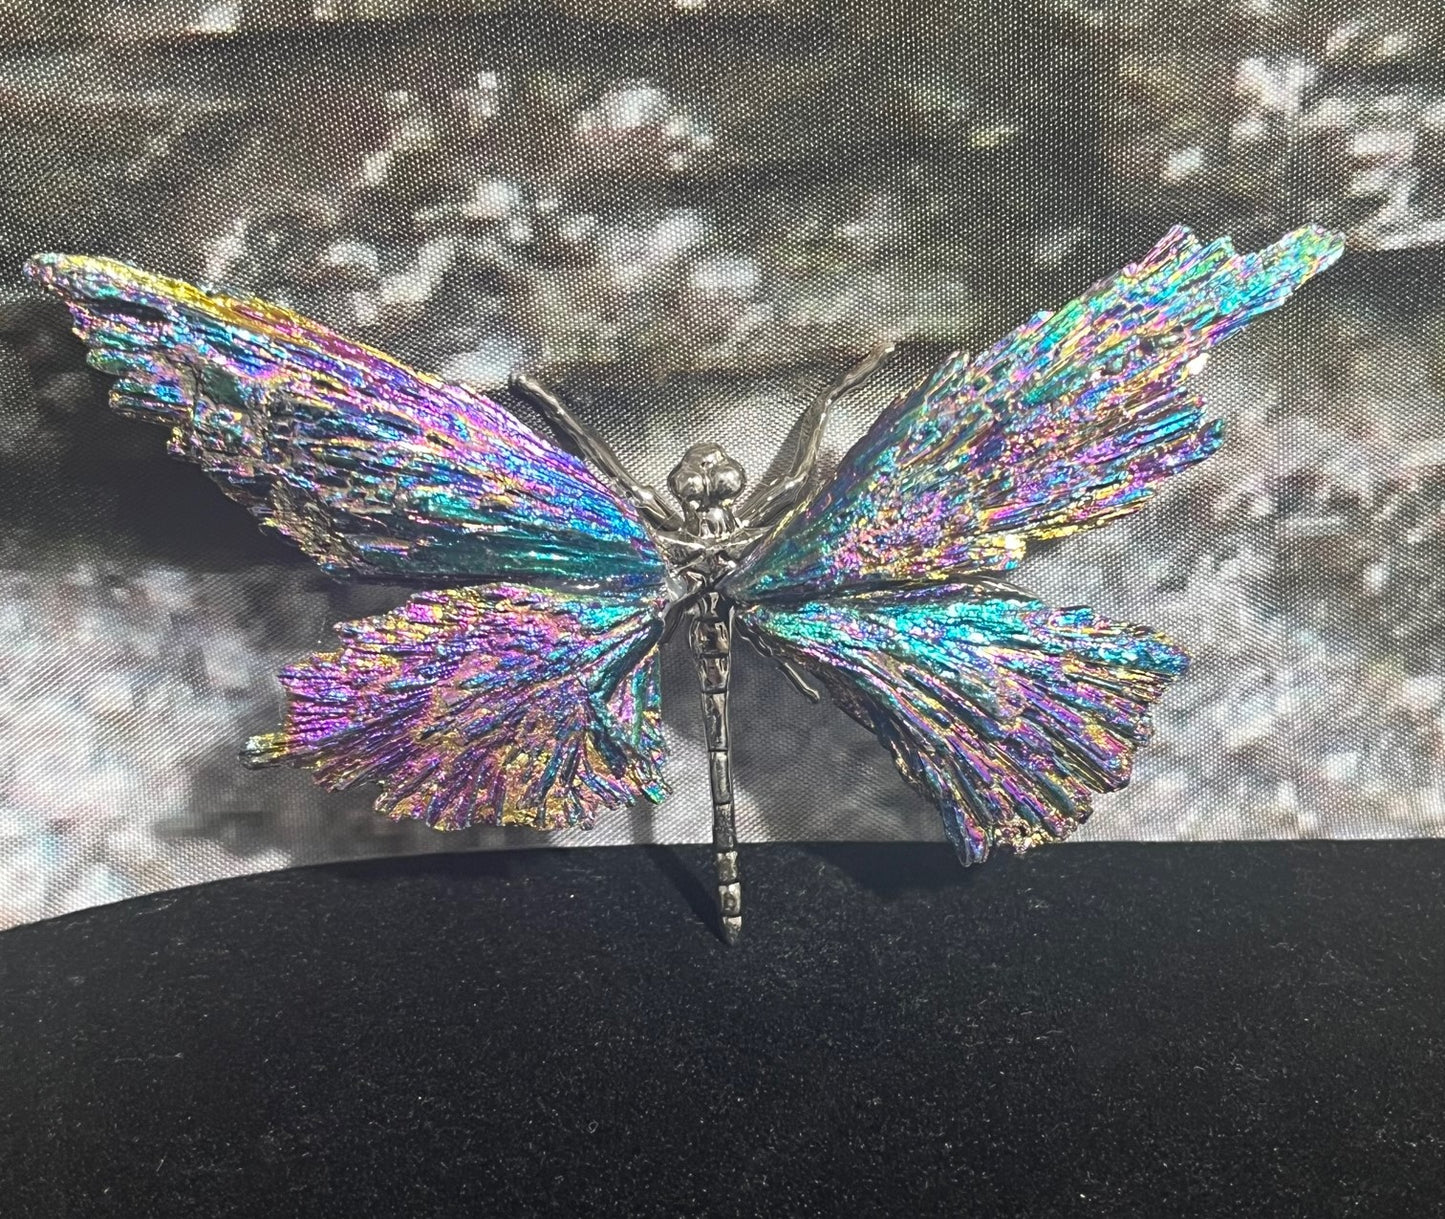 Dragonfly natural crystal display